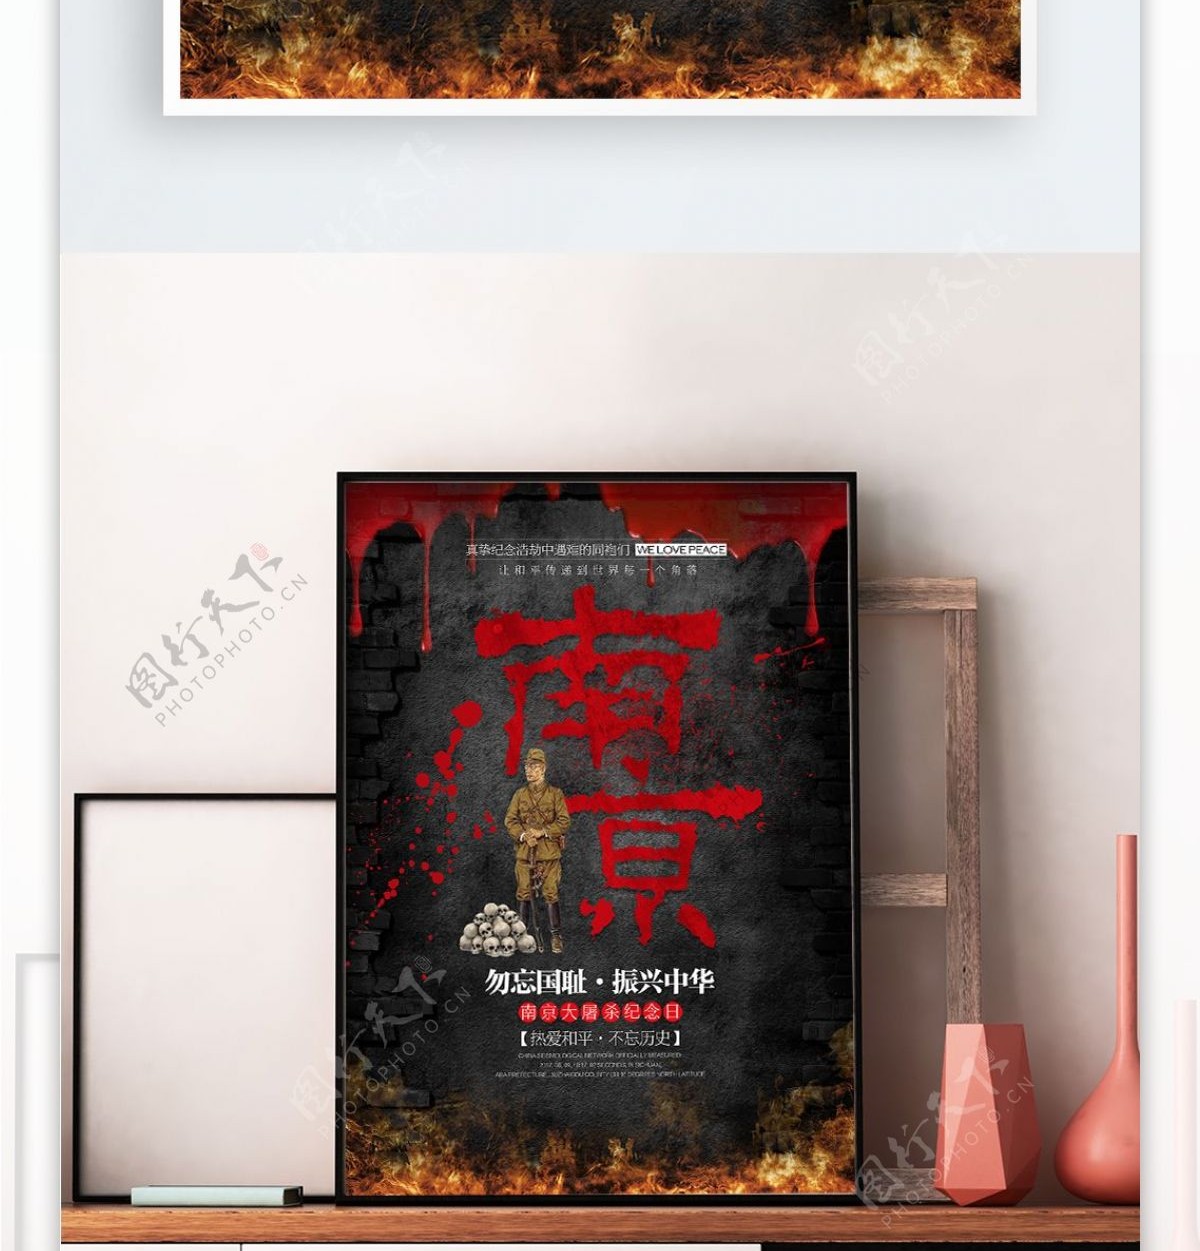 南京大屠杀勿忘国耻公益宣传海报展板